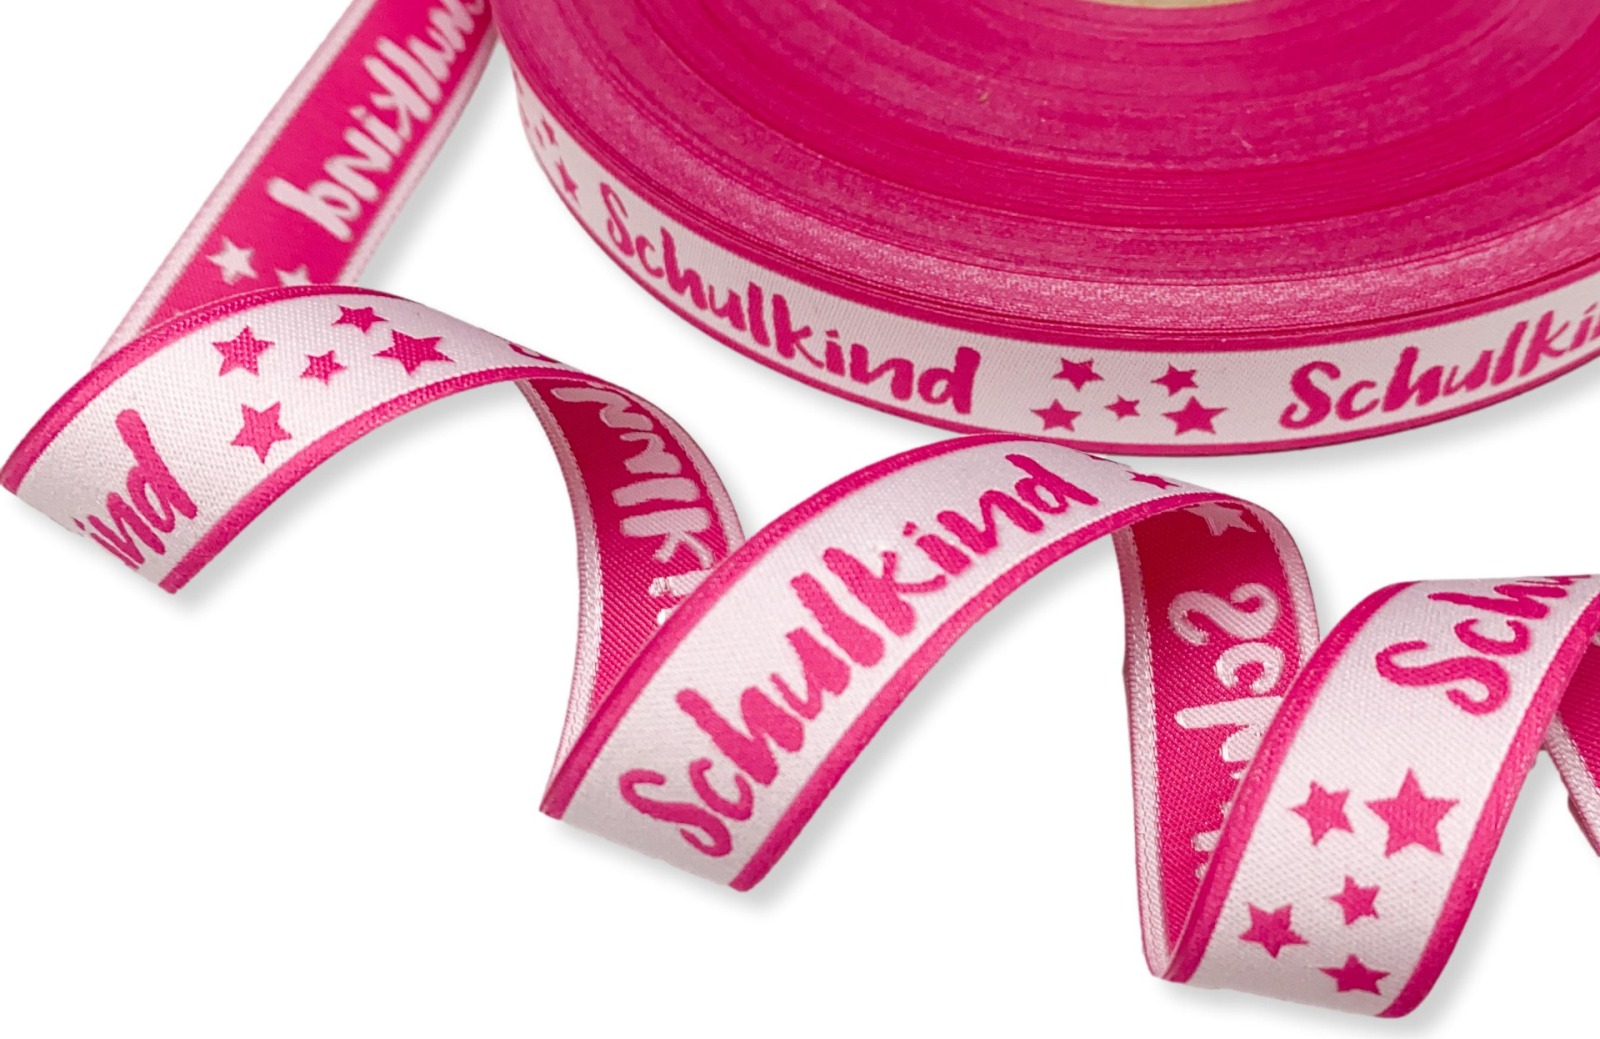 Webband Schulkind - pink - für Schultüten und Einschulungsgeschenke 17 mm breit 5